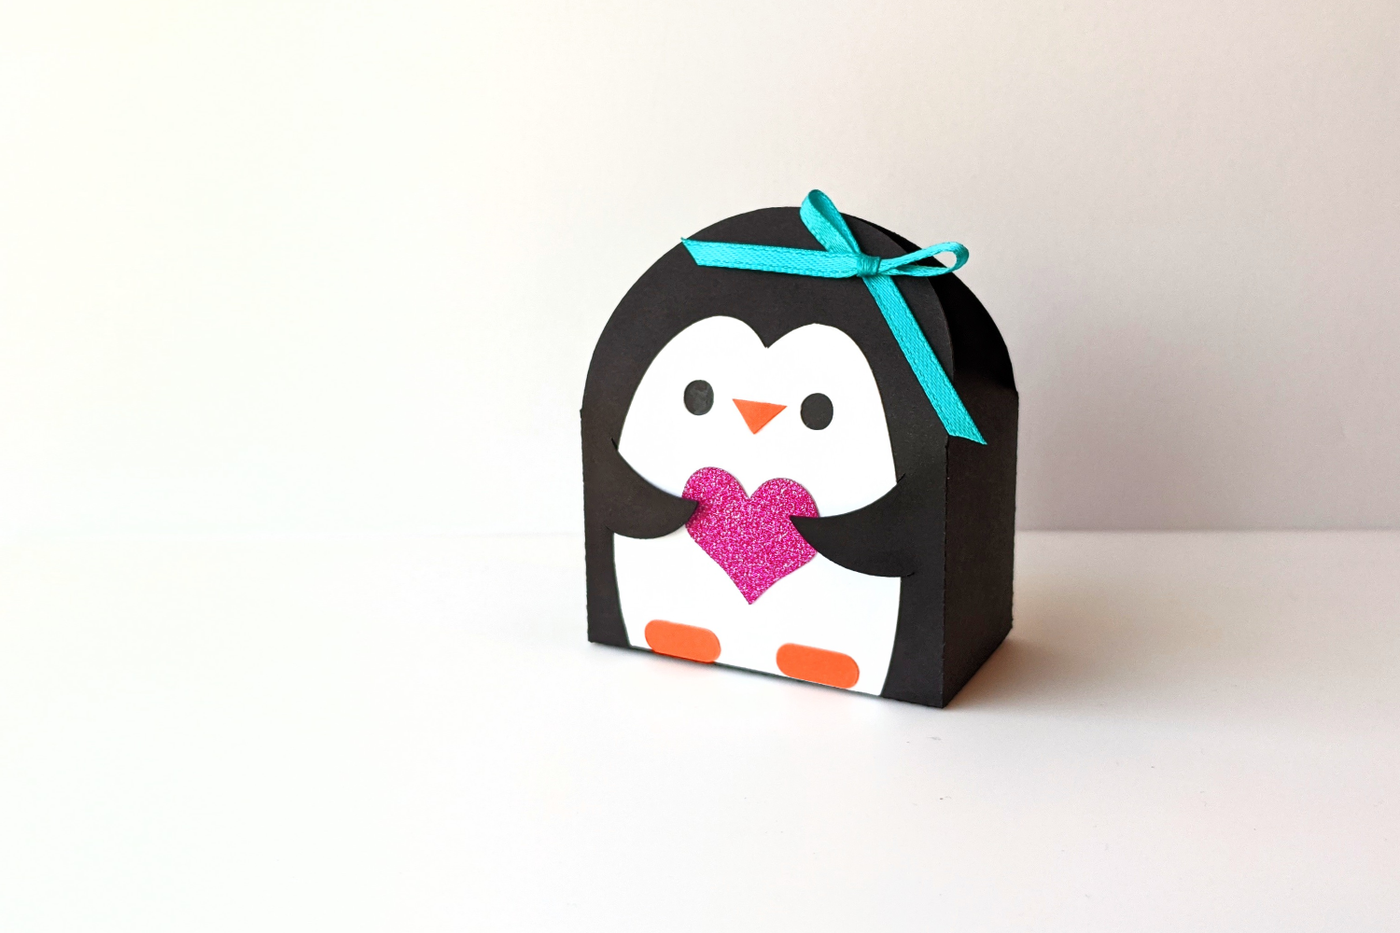 Penguin shaped gift box SVG design. The penguin holds a heart.